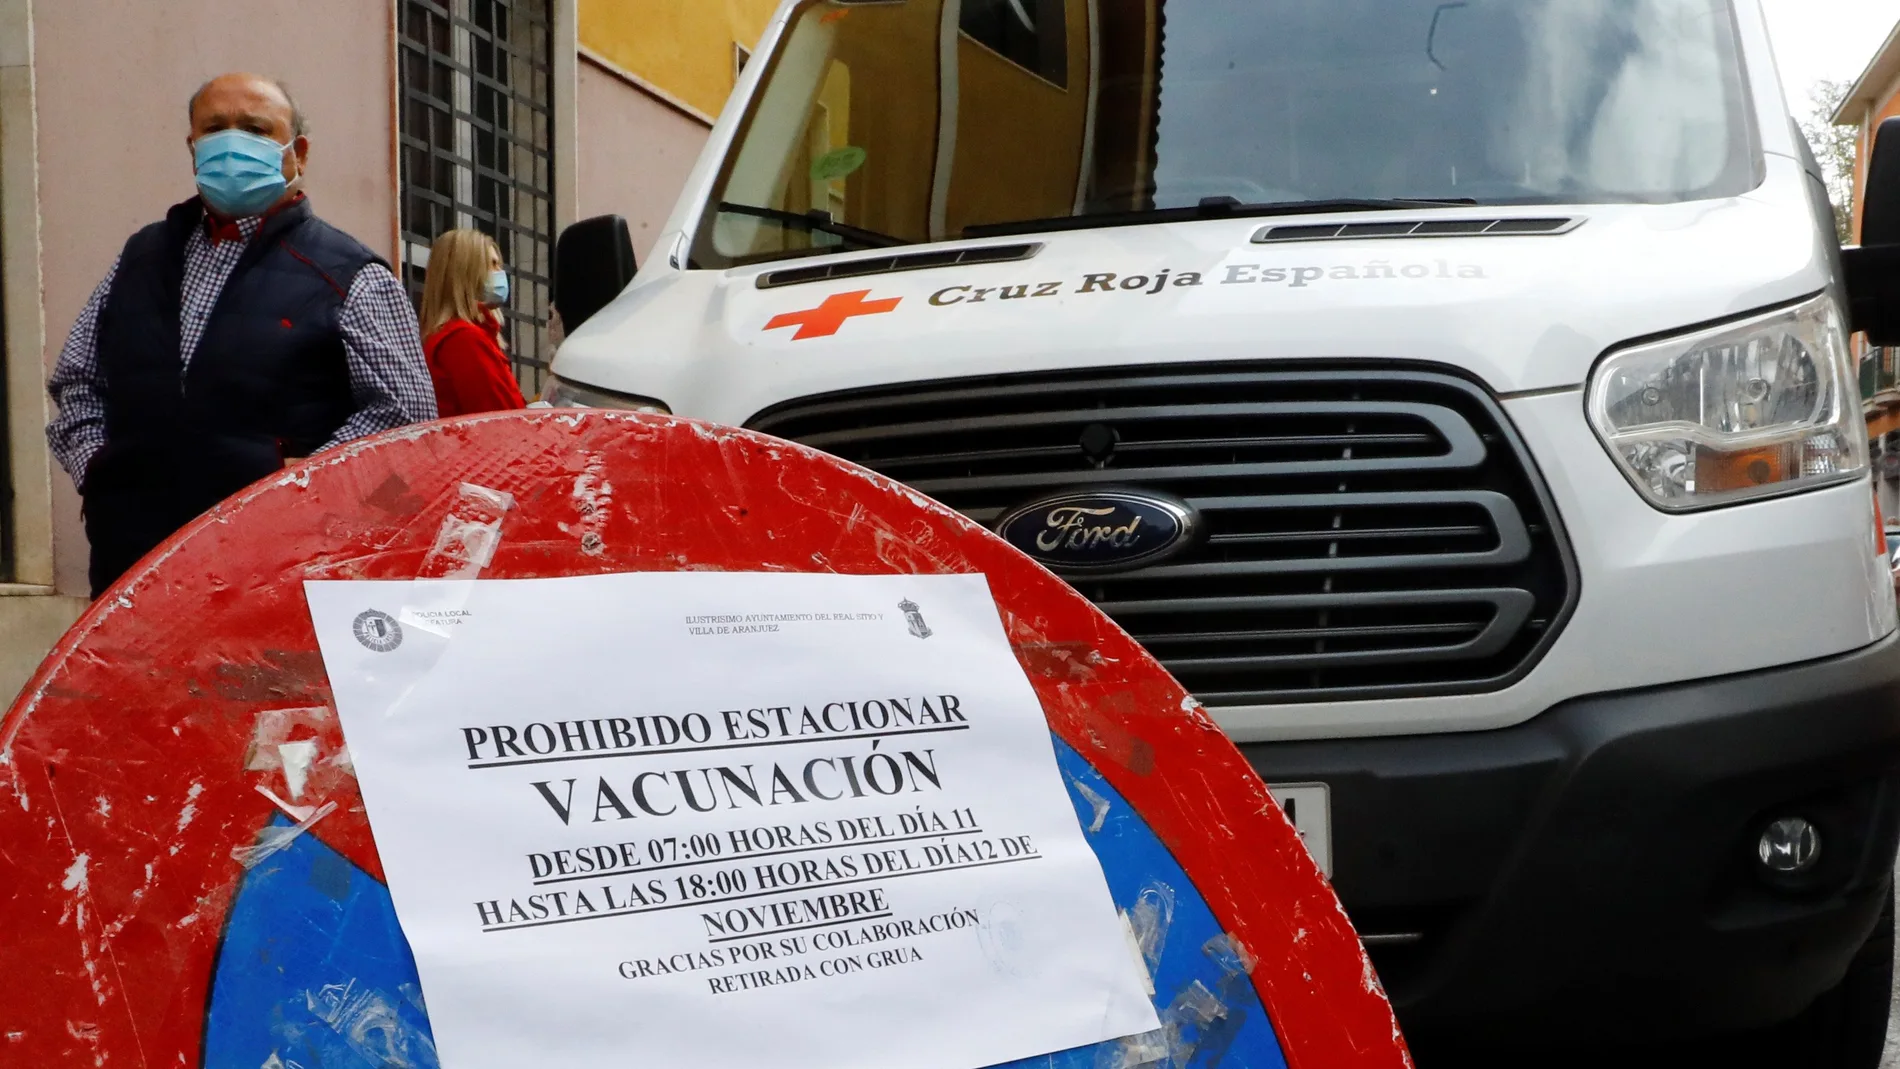 Campaña de vacunación contra la gripe de la Cruz Roja este jueves en la localidad madrileña de Aranjuez, Madrid